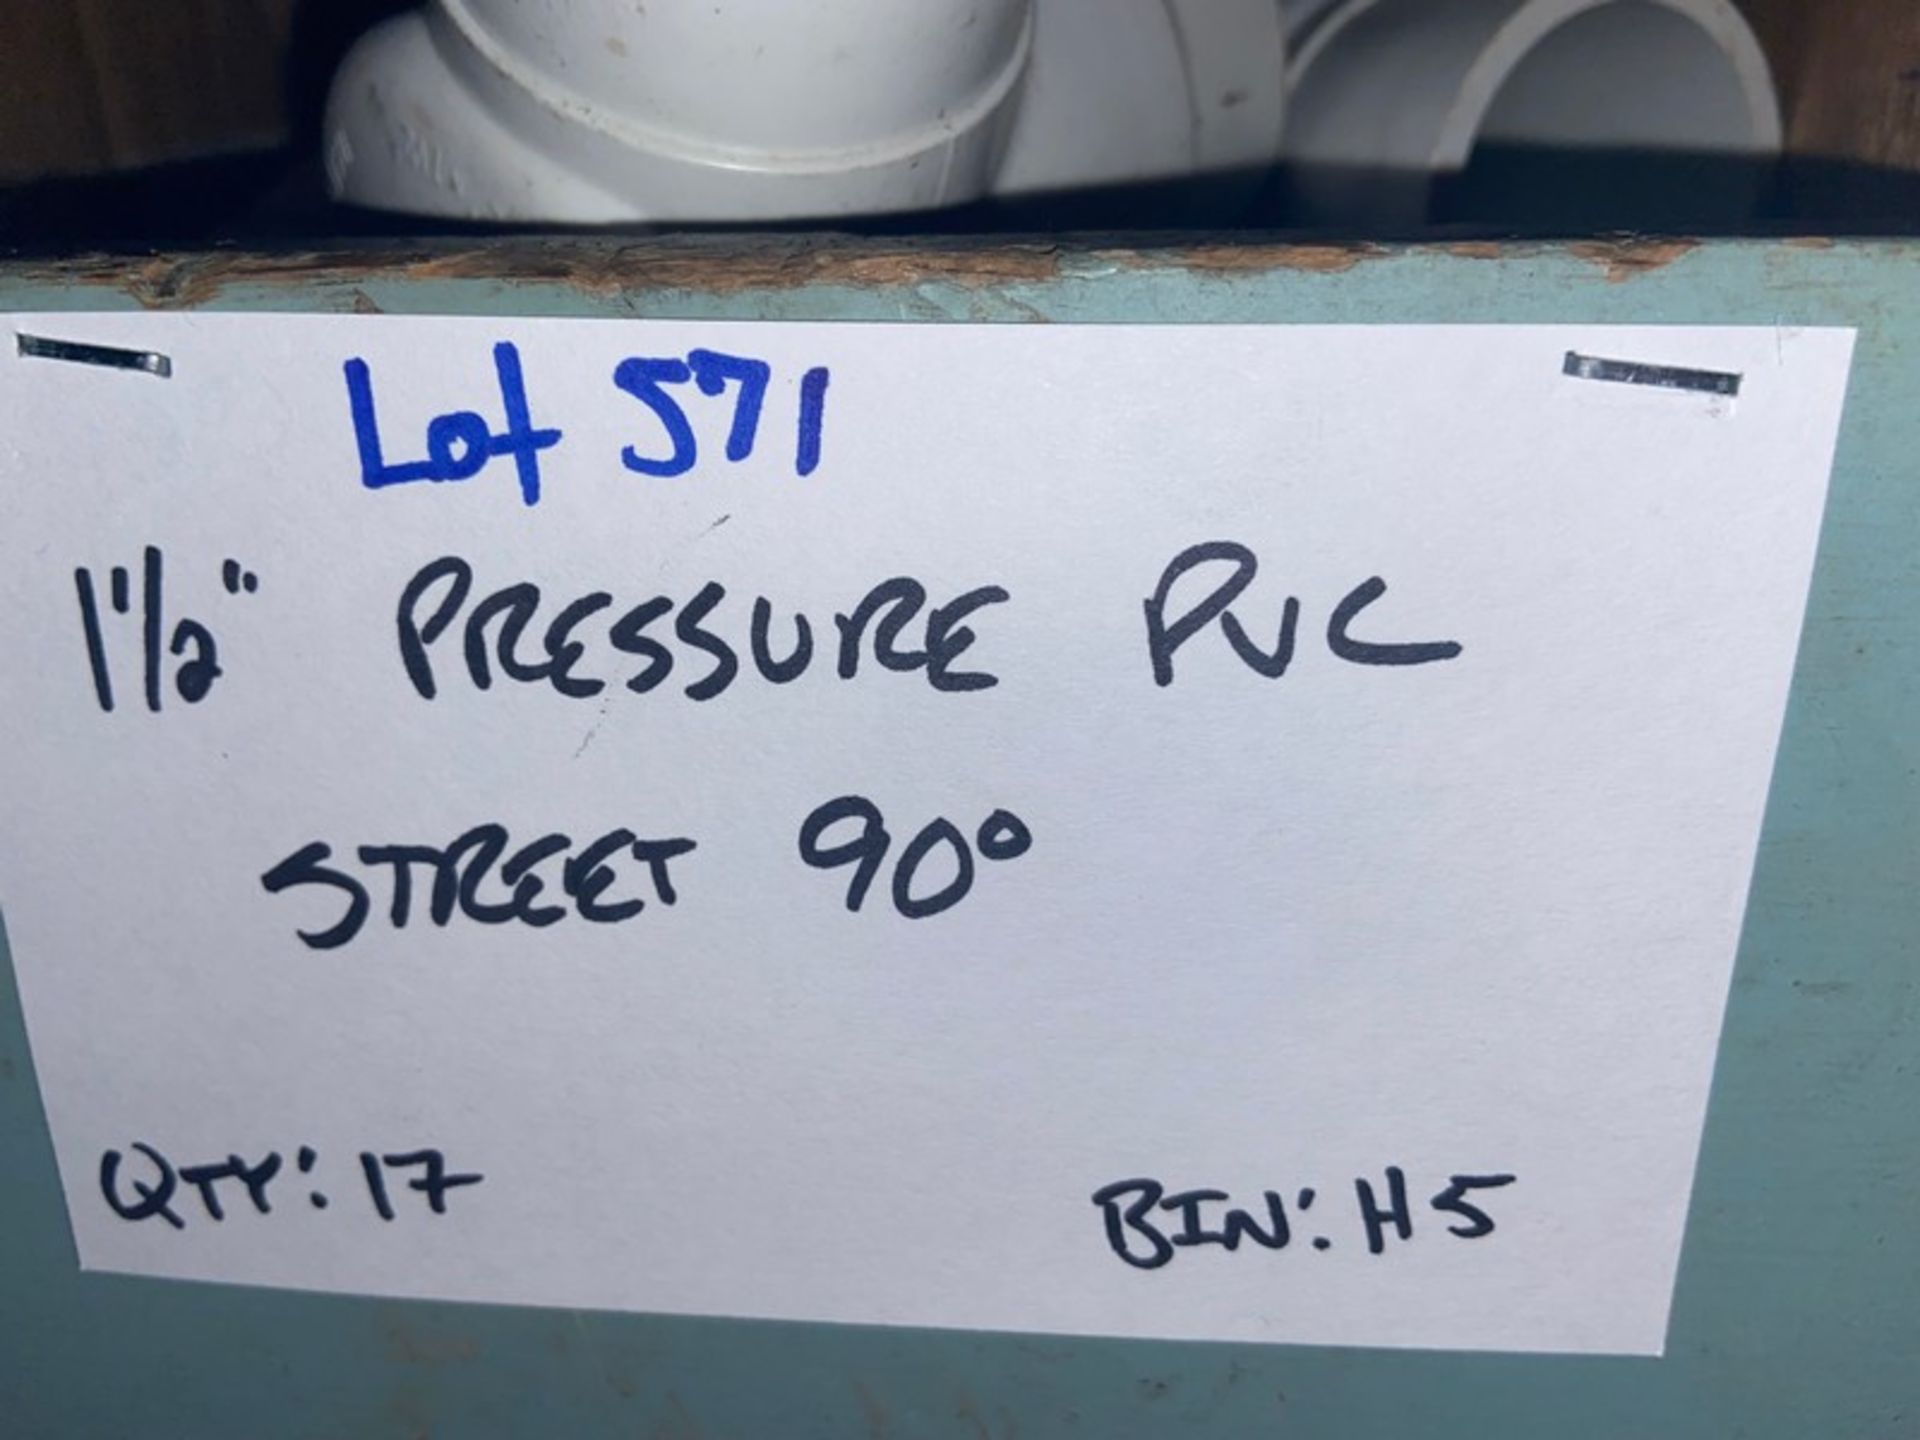 (17) 1-1/2" Pressure PVC Street 90' (Bin: H5); (29) 1-1/2" Pressure PVC 90' (Bin: H5) (LOCATED IN - Image 4 of 9